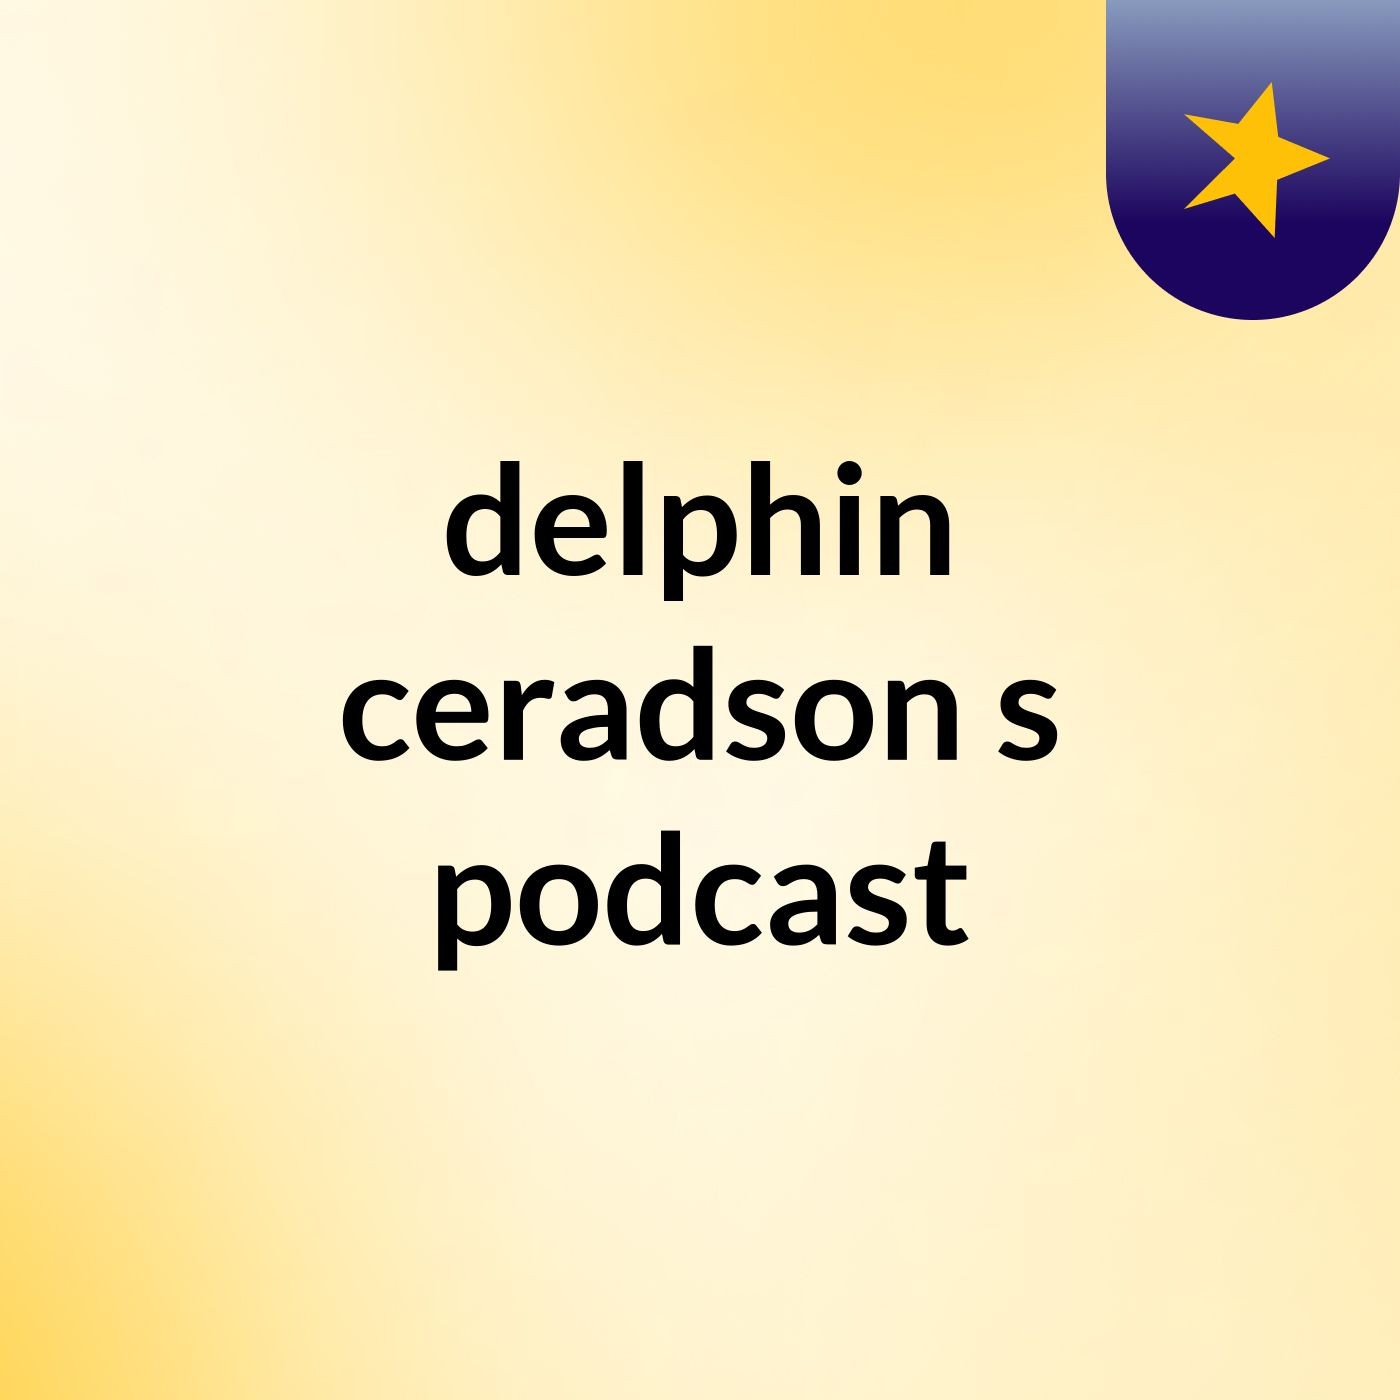 Episode 7 - delphin ceradson's podcast